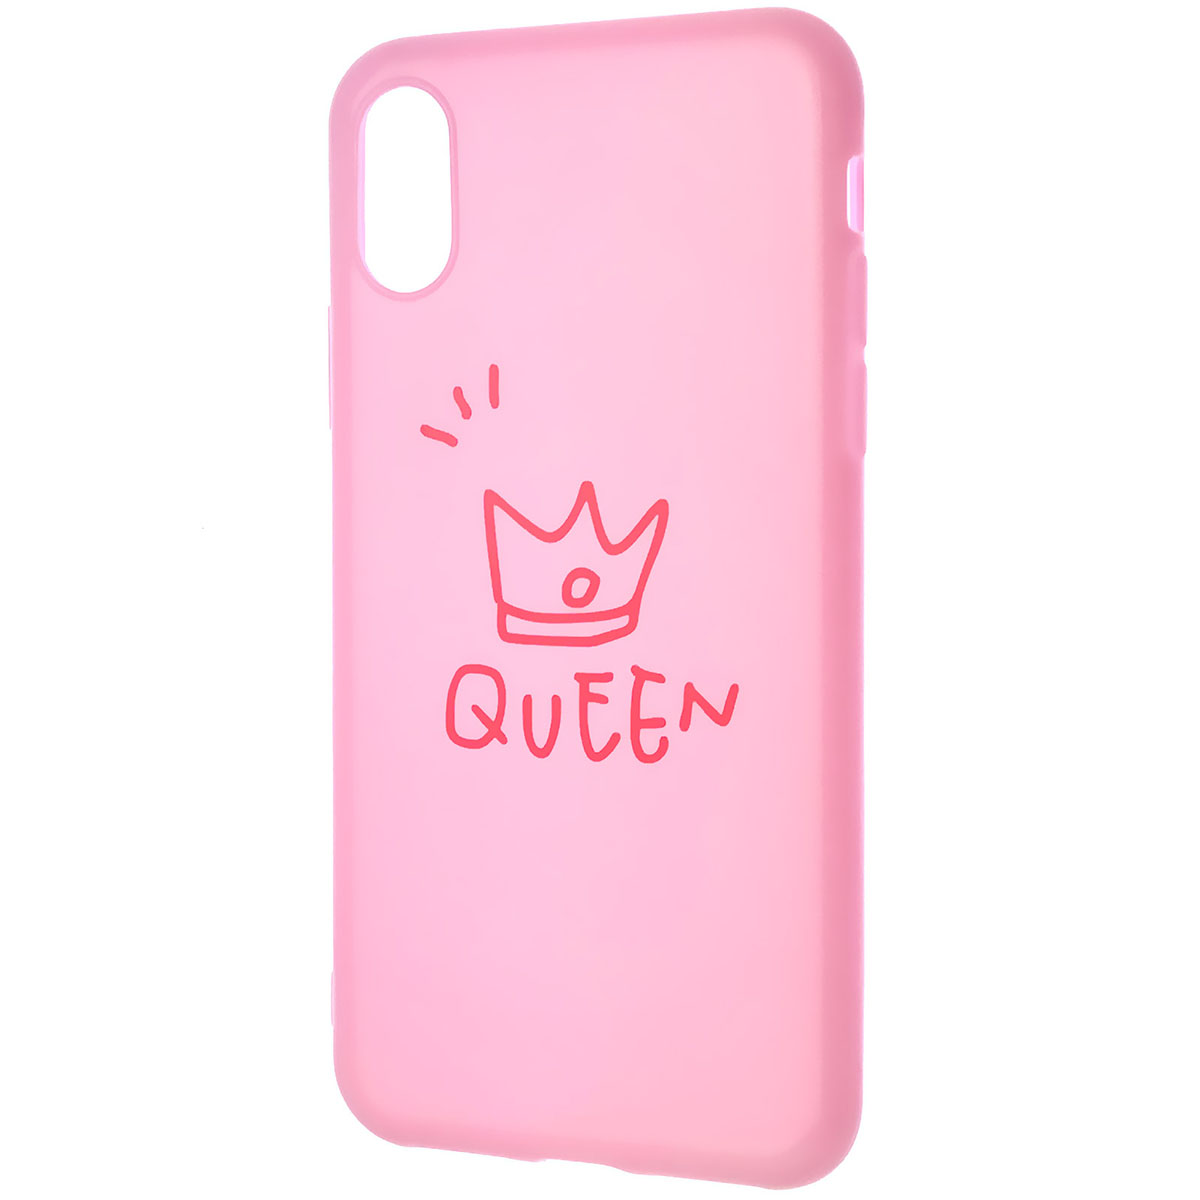 Чехол накладка для APPLE iPhone X, iPhone XS, силикон, глянцевый, рисунок Queen, цвет розовый.